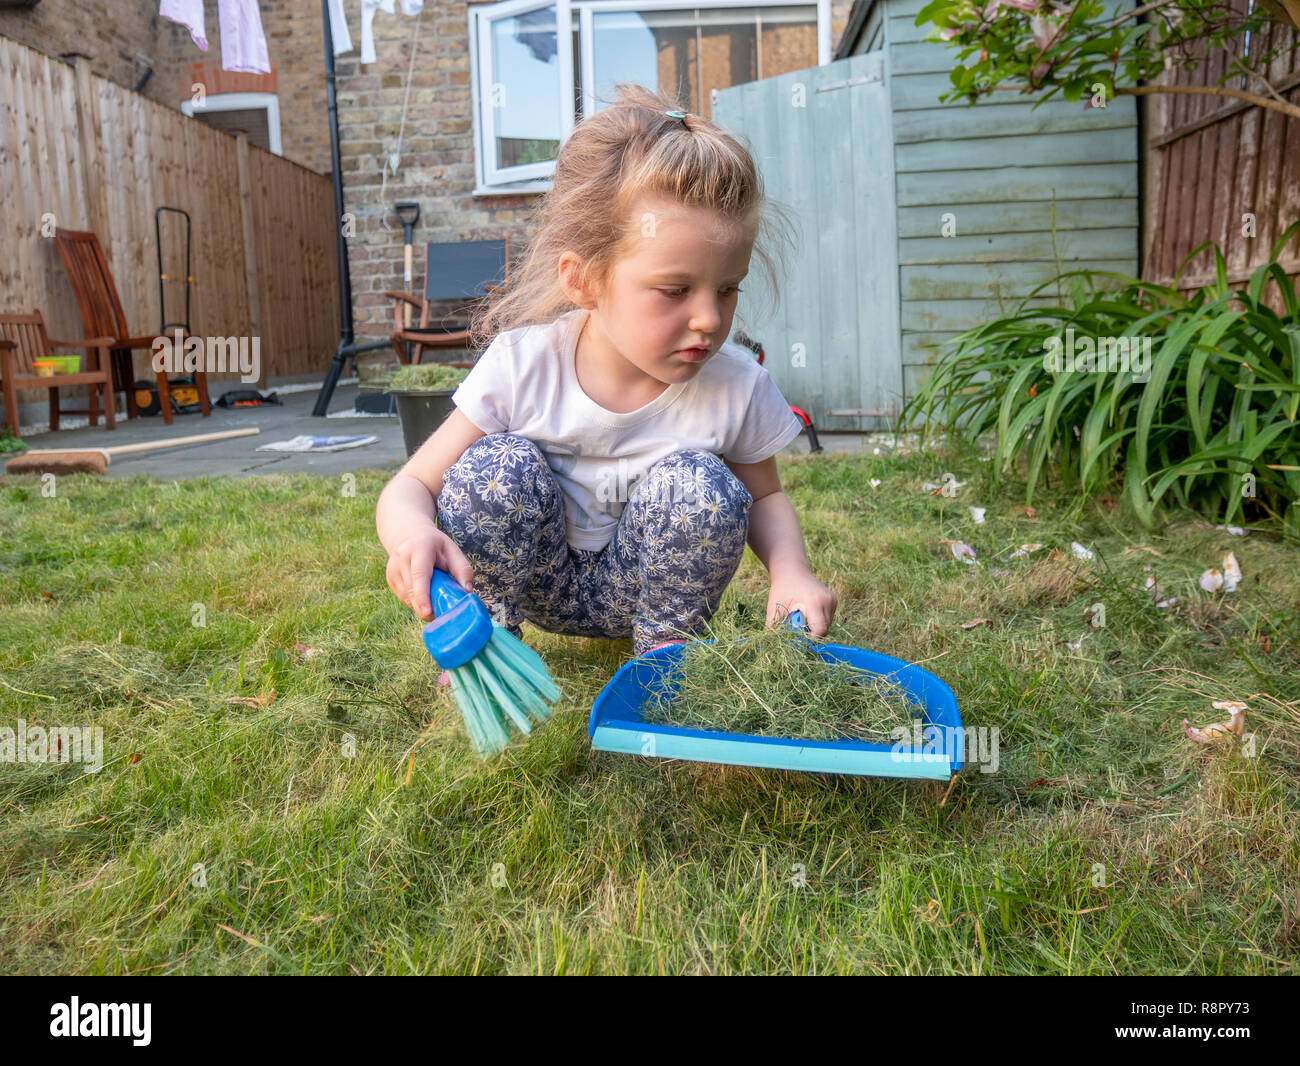 Bimba di tre anni spazzando su erba tagliata nel giardino sul retro, London, Regno Unito Foto Stock